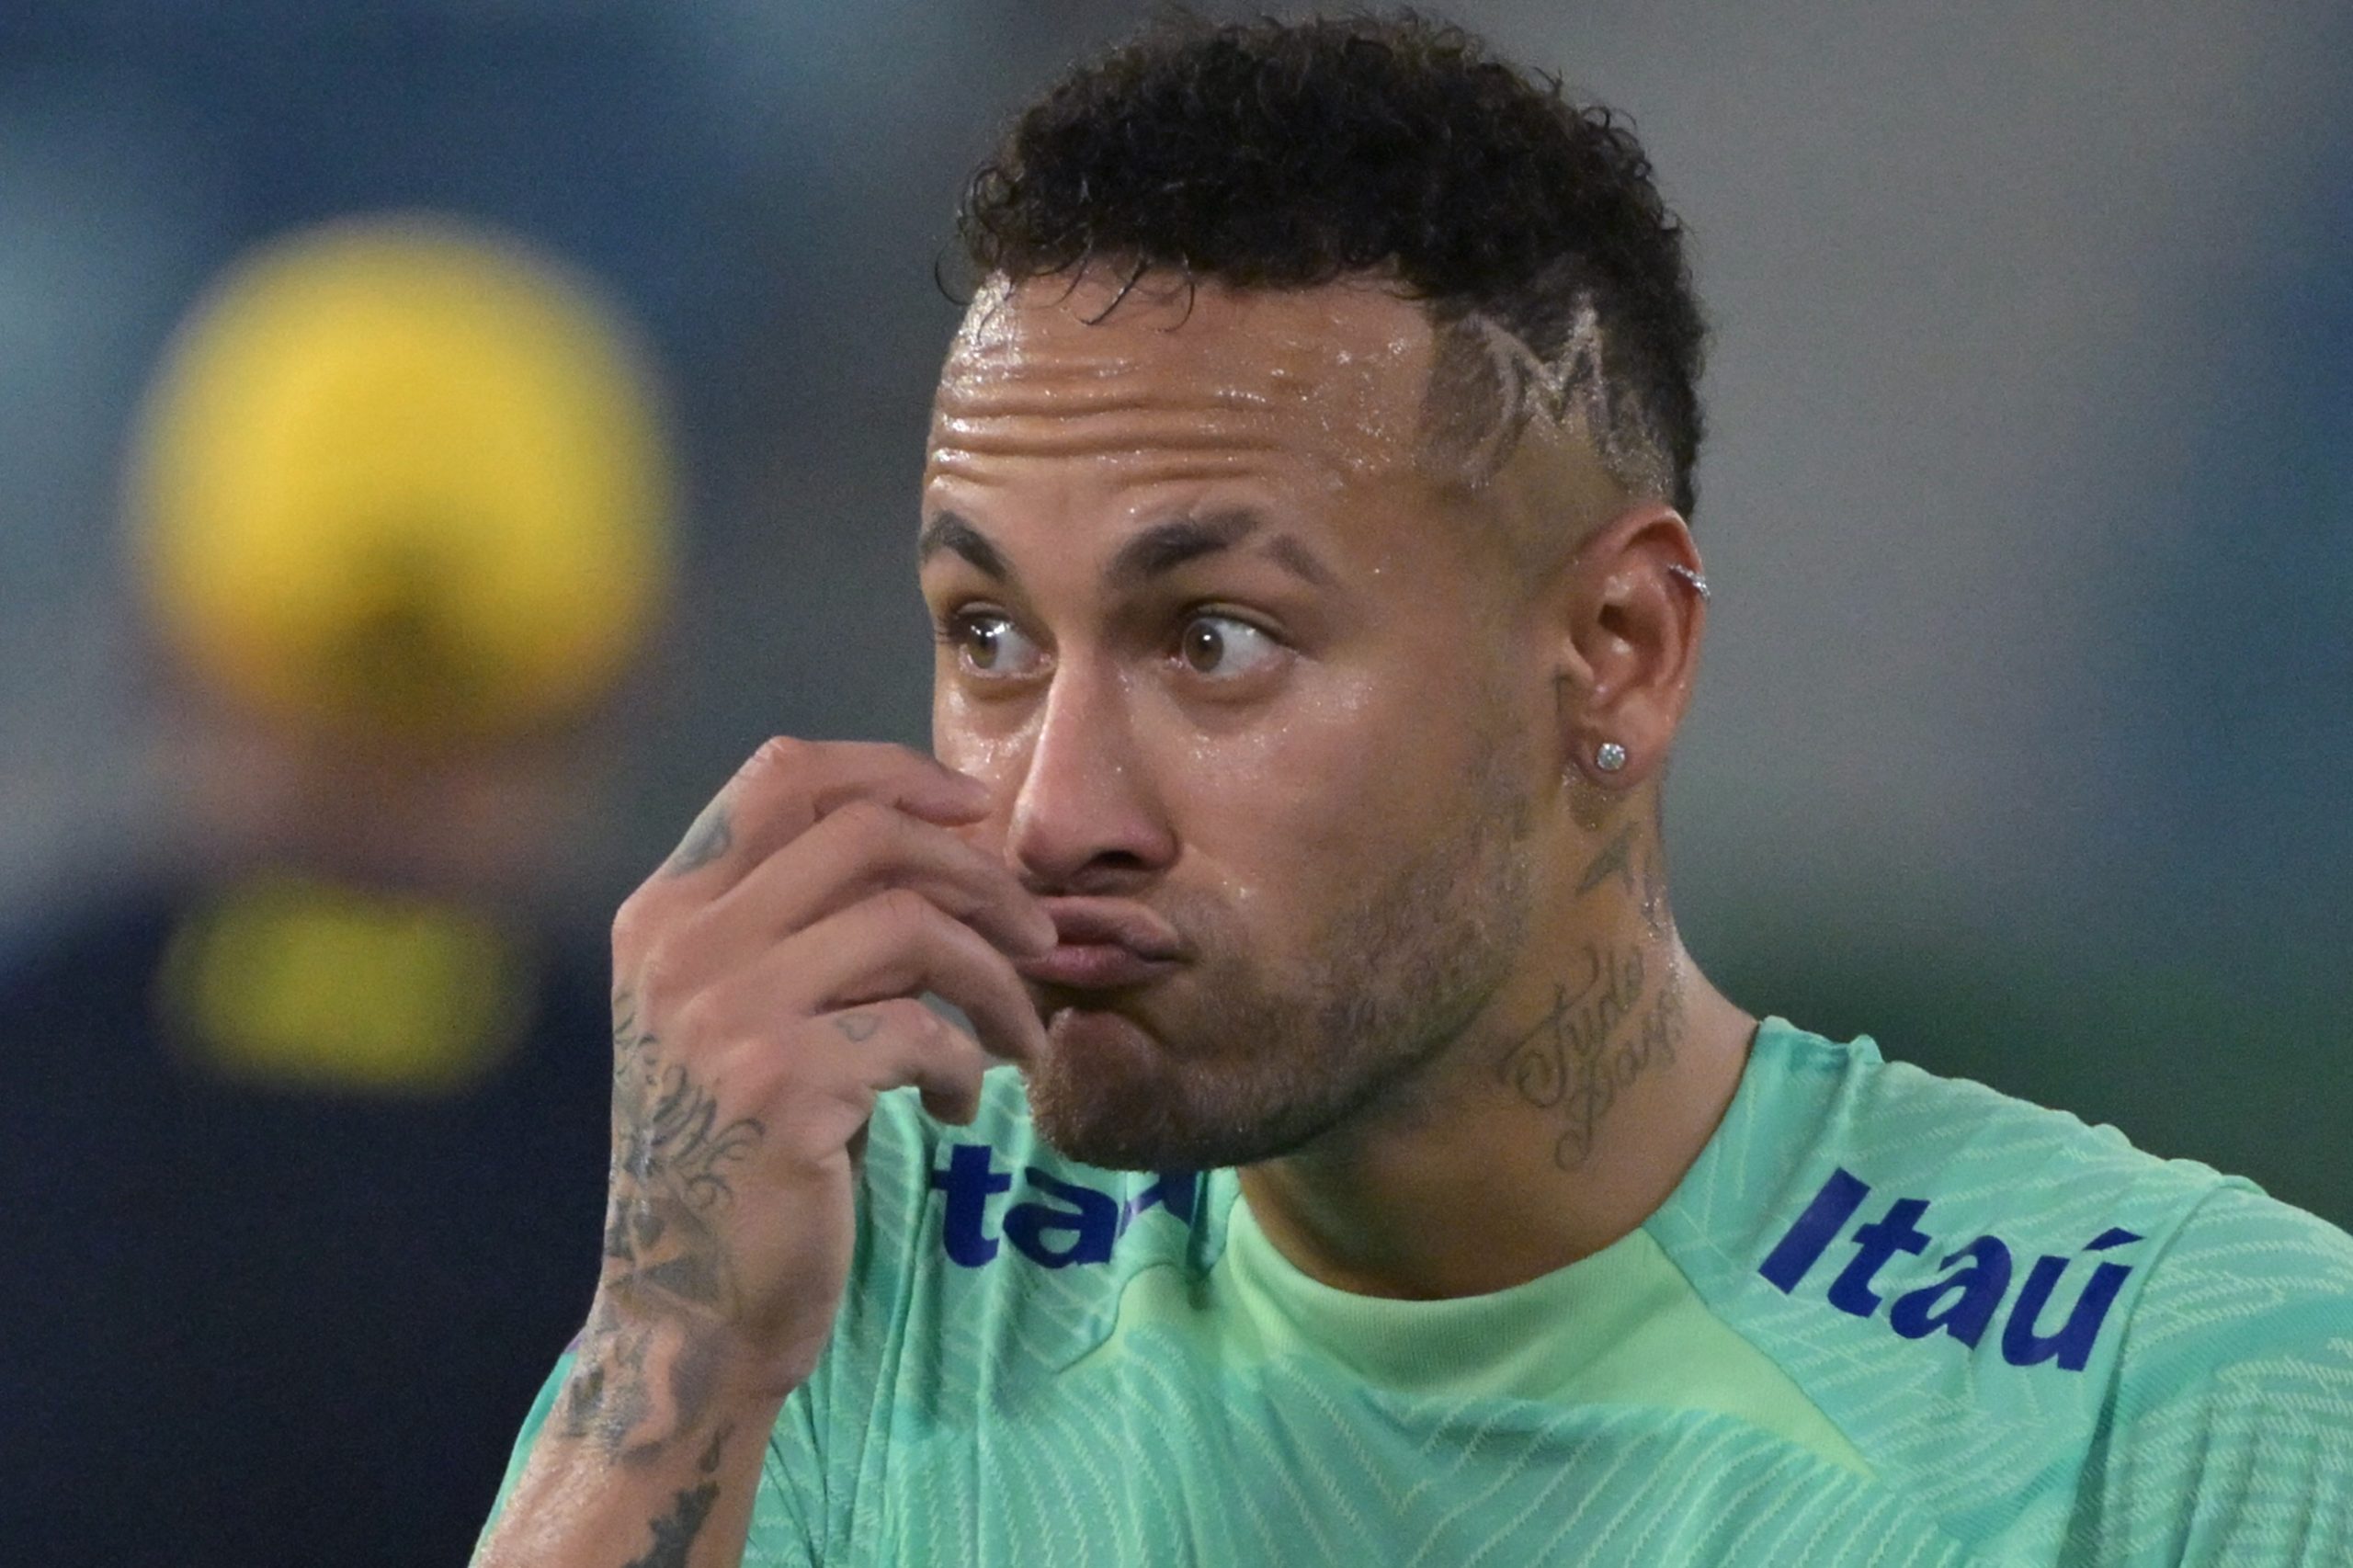 Neymar enfrenta mais uma polêmica envolvendo maternidade (Foto: NELSON ALMEIDA/AFP via Getty Images)